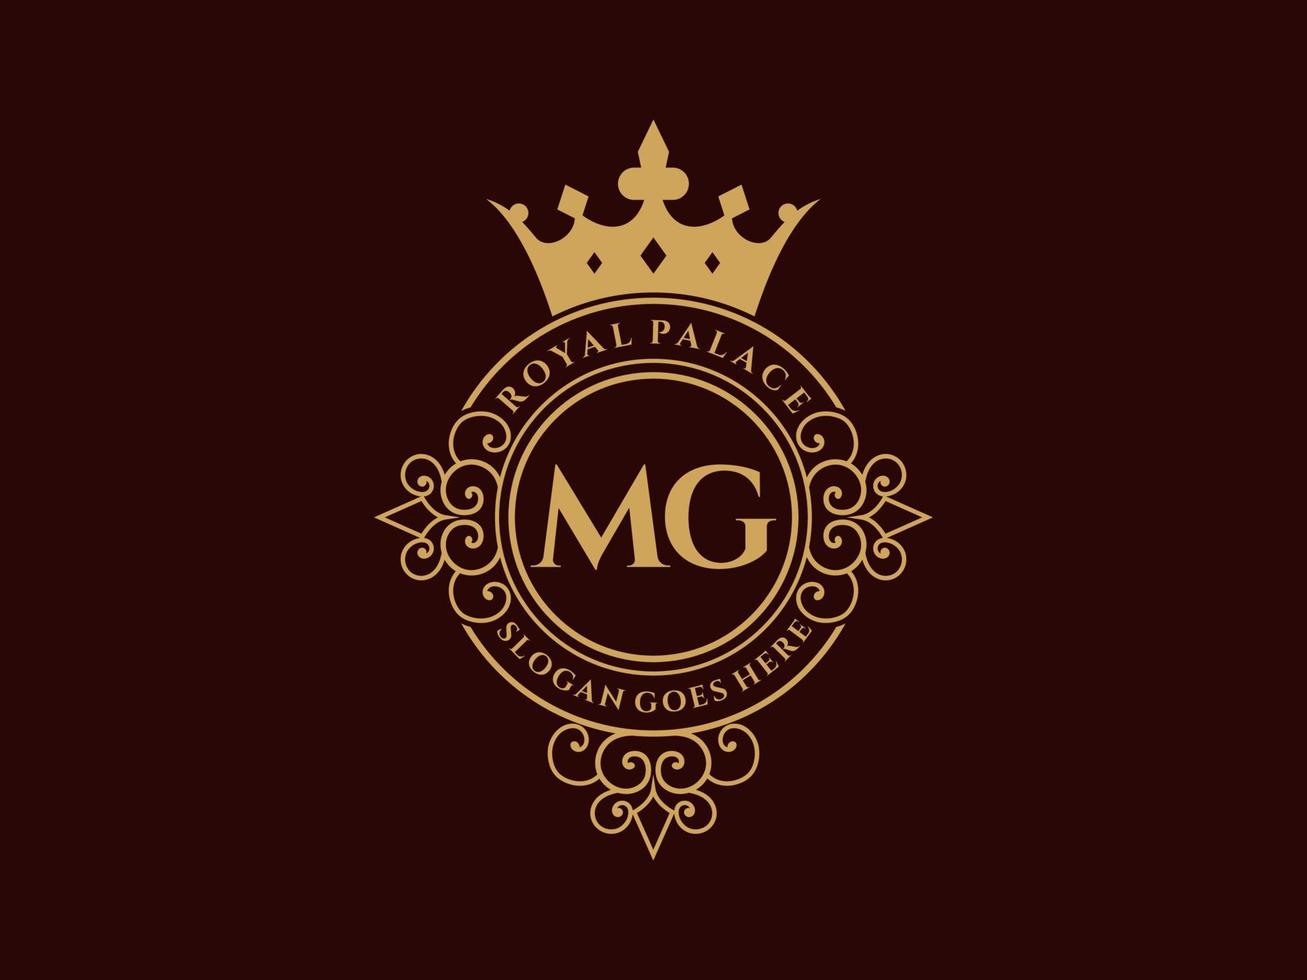 lettre mg logo victorien de luxe royal antique avec cadre ornemental. vecteur